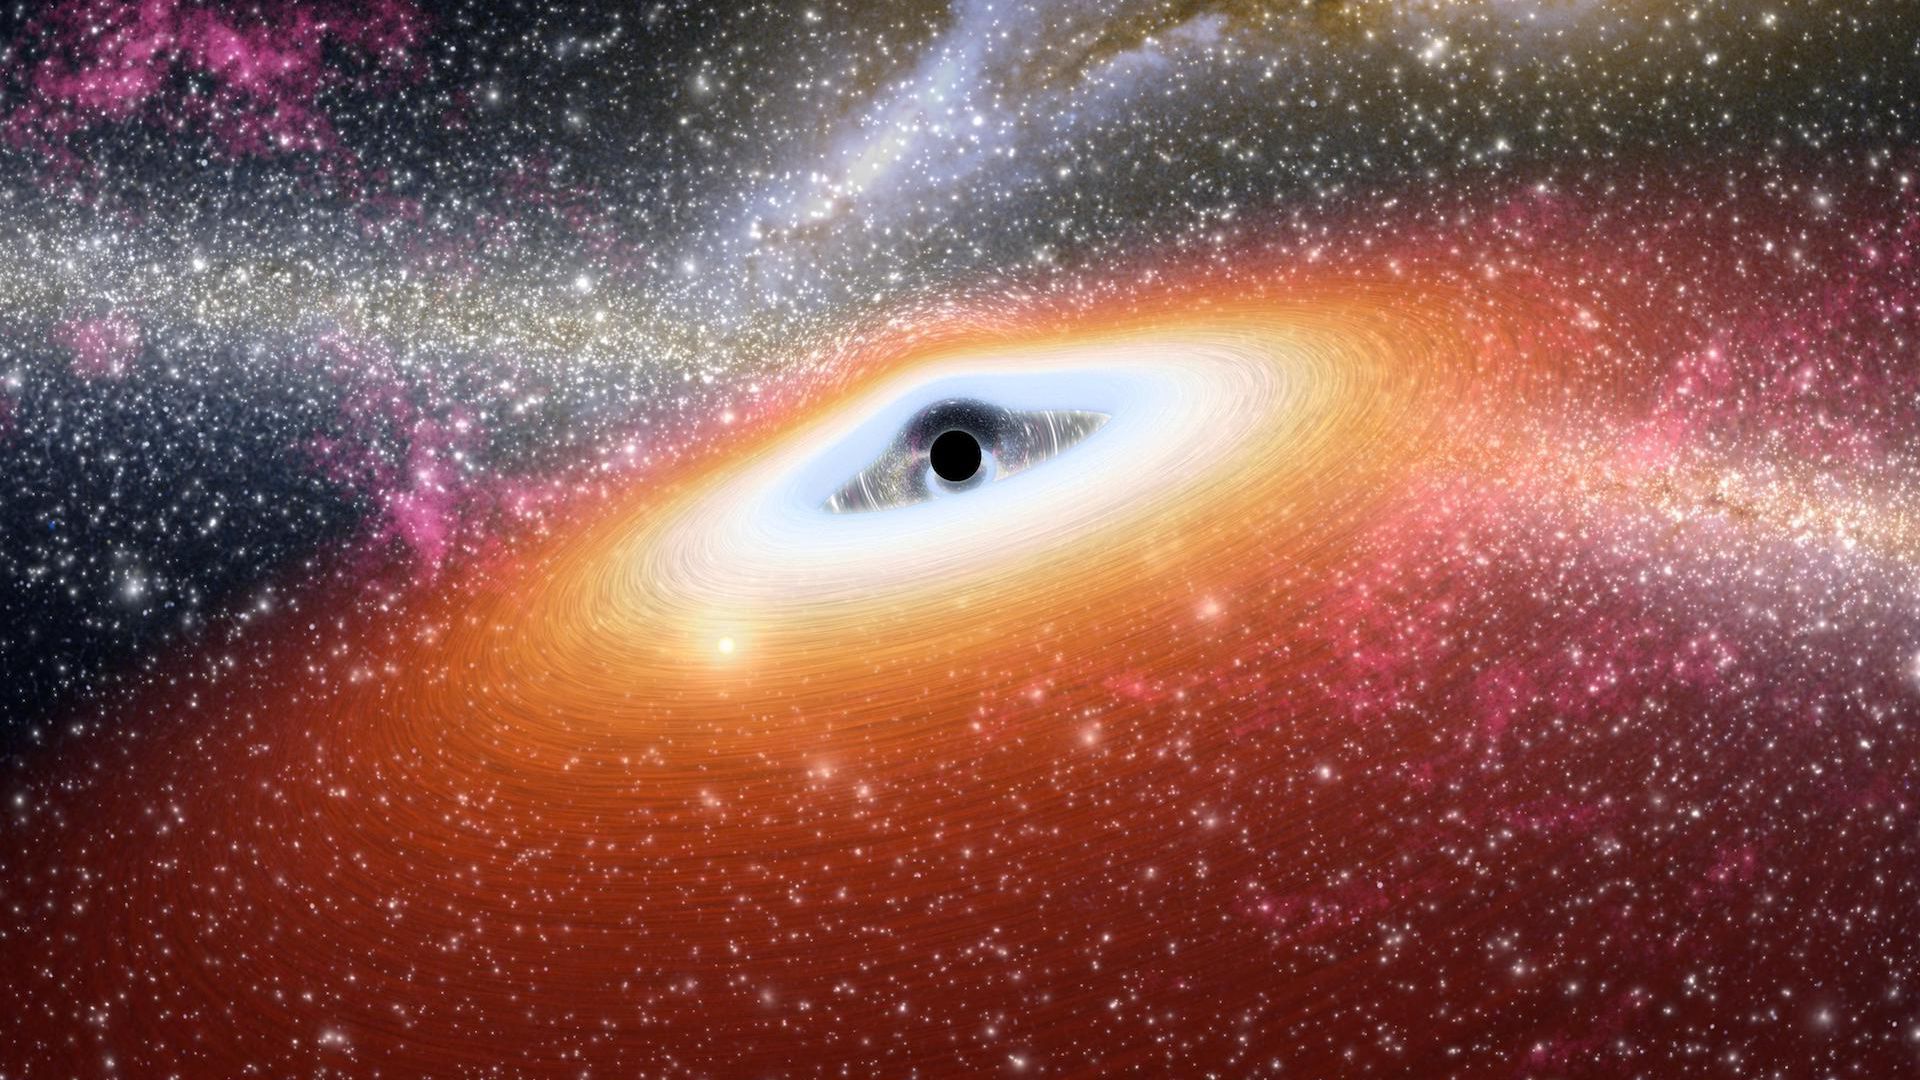 Artist's concept of an intermediate-mass black hole